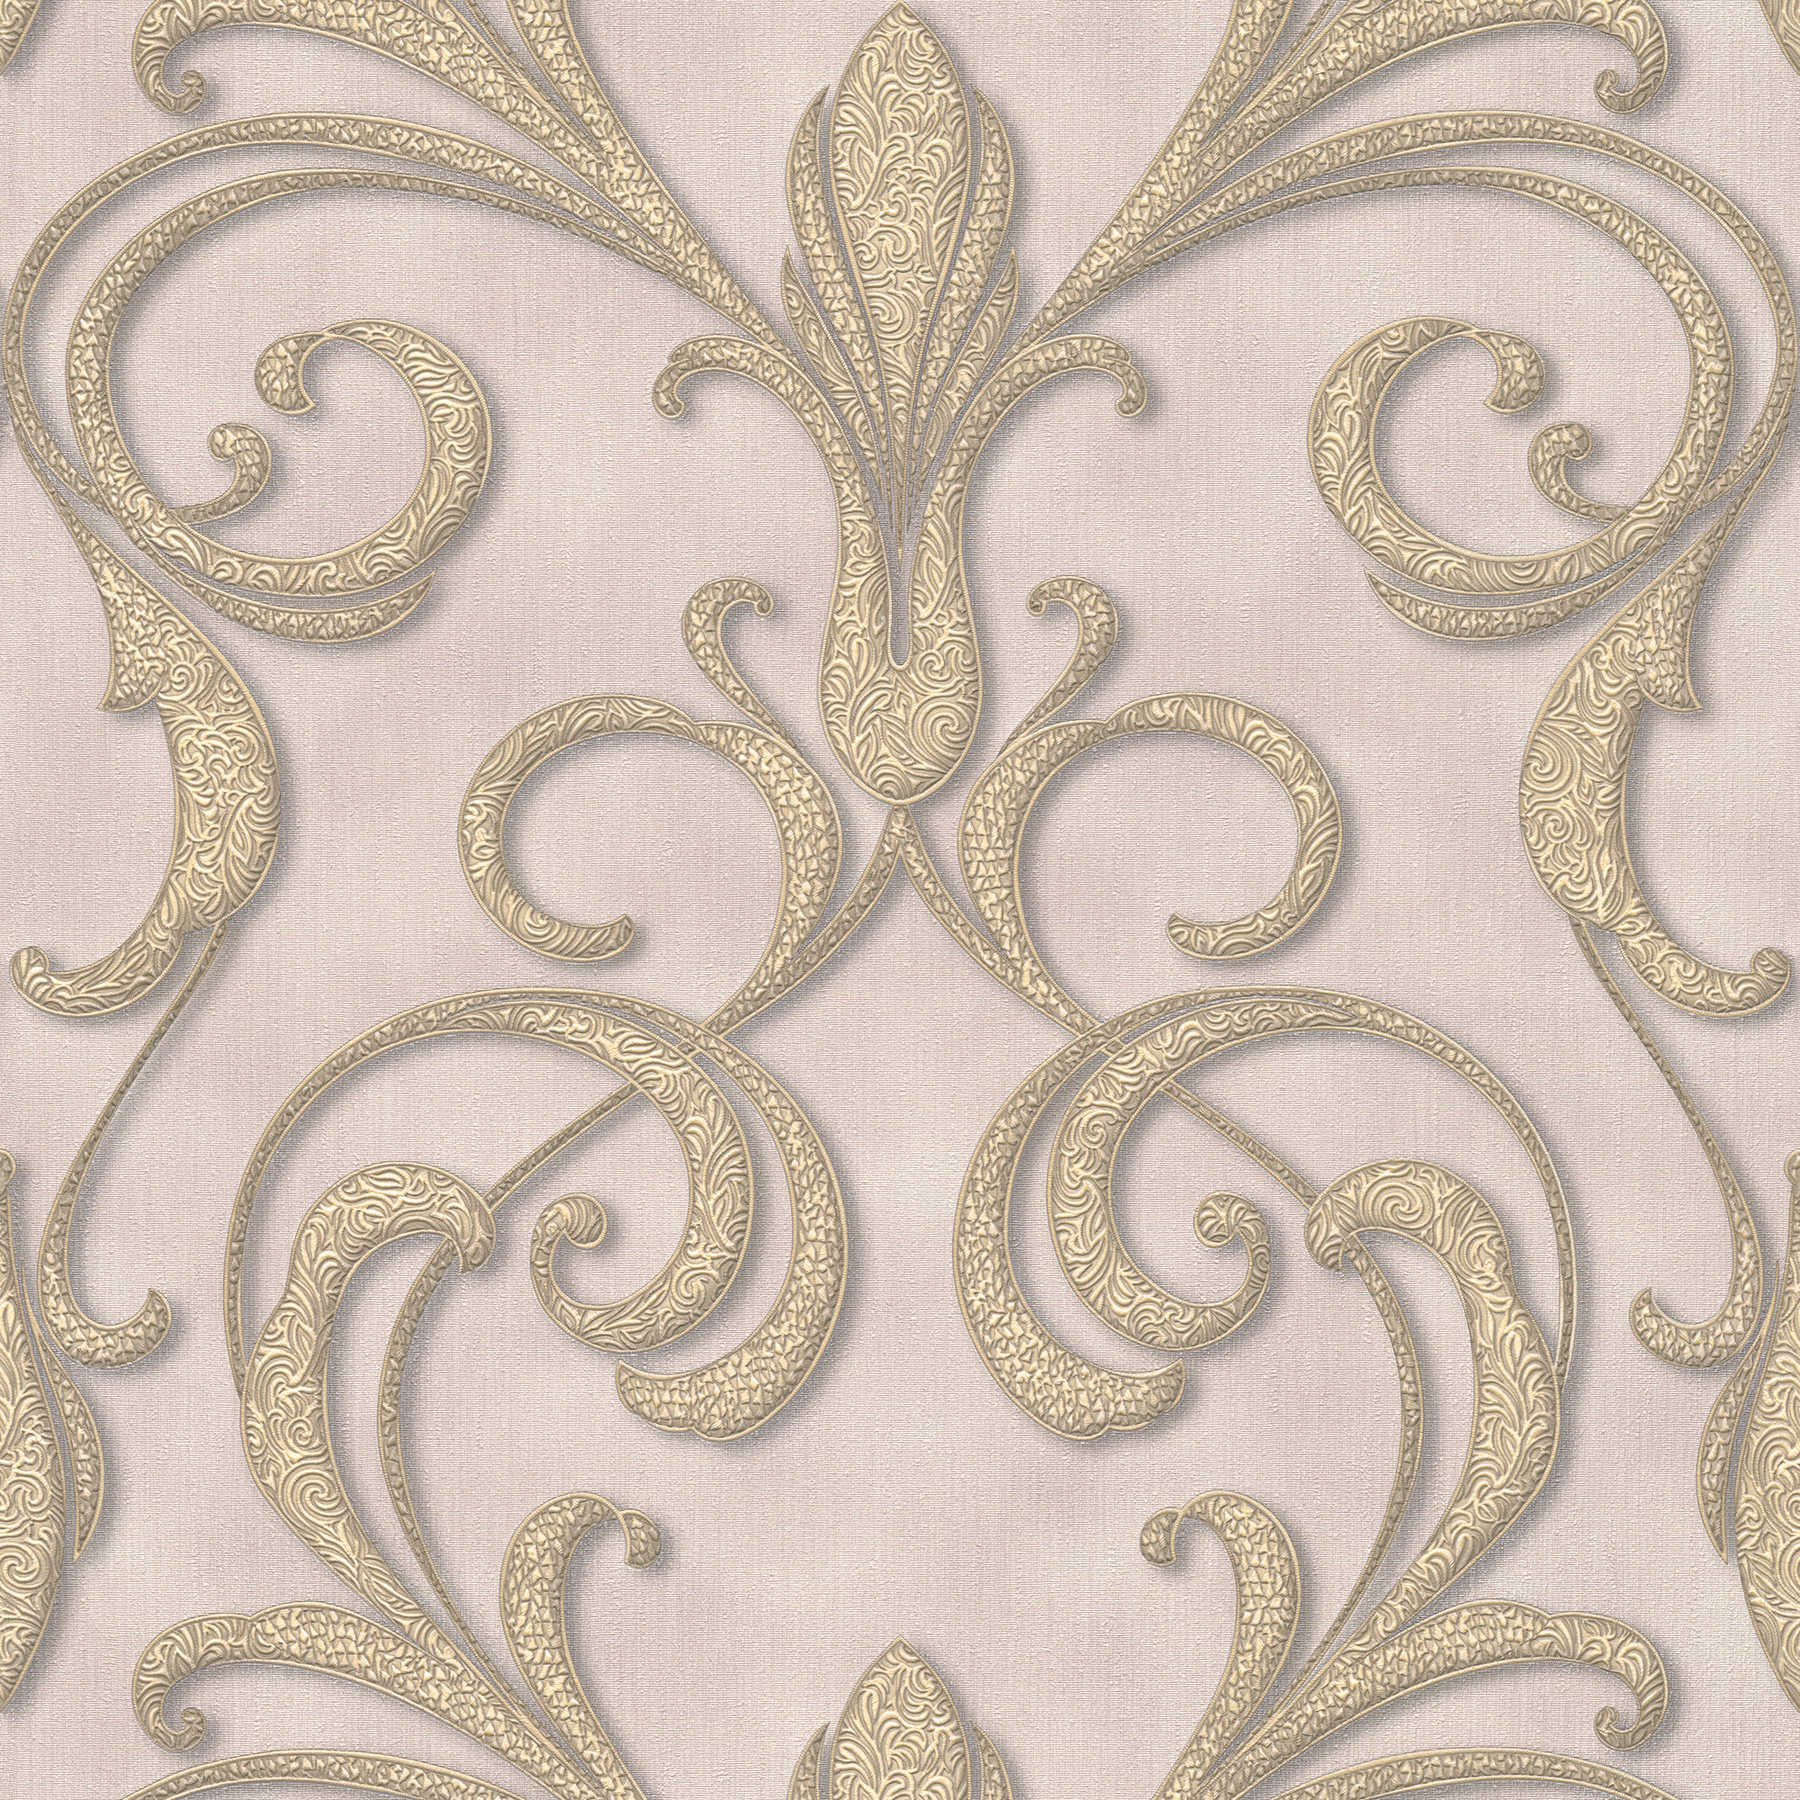 Filigree ornament wallpaper in baroque style - gold, purple, brown
